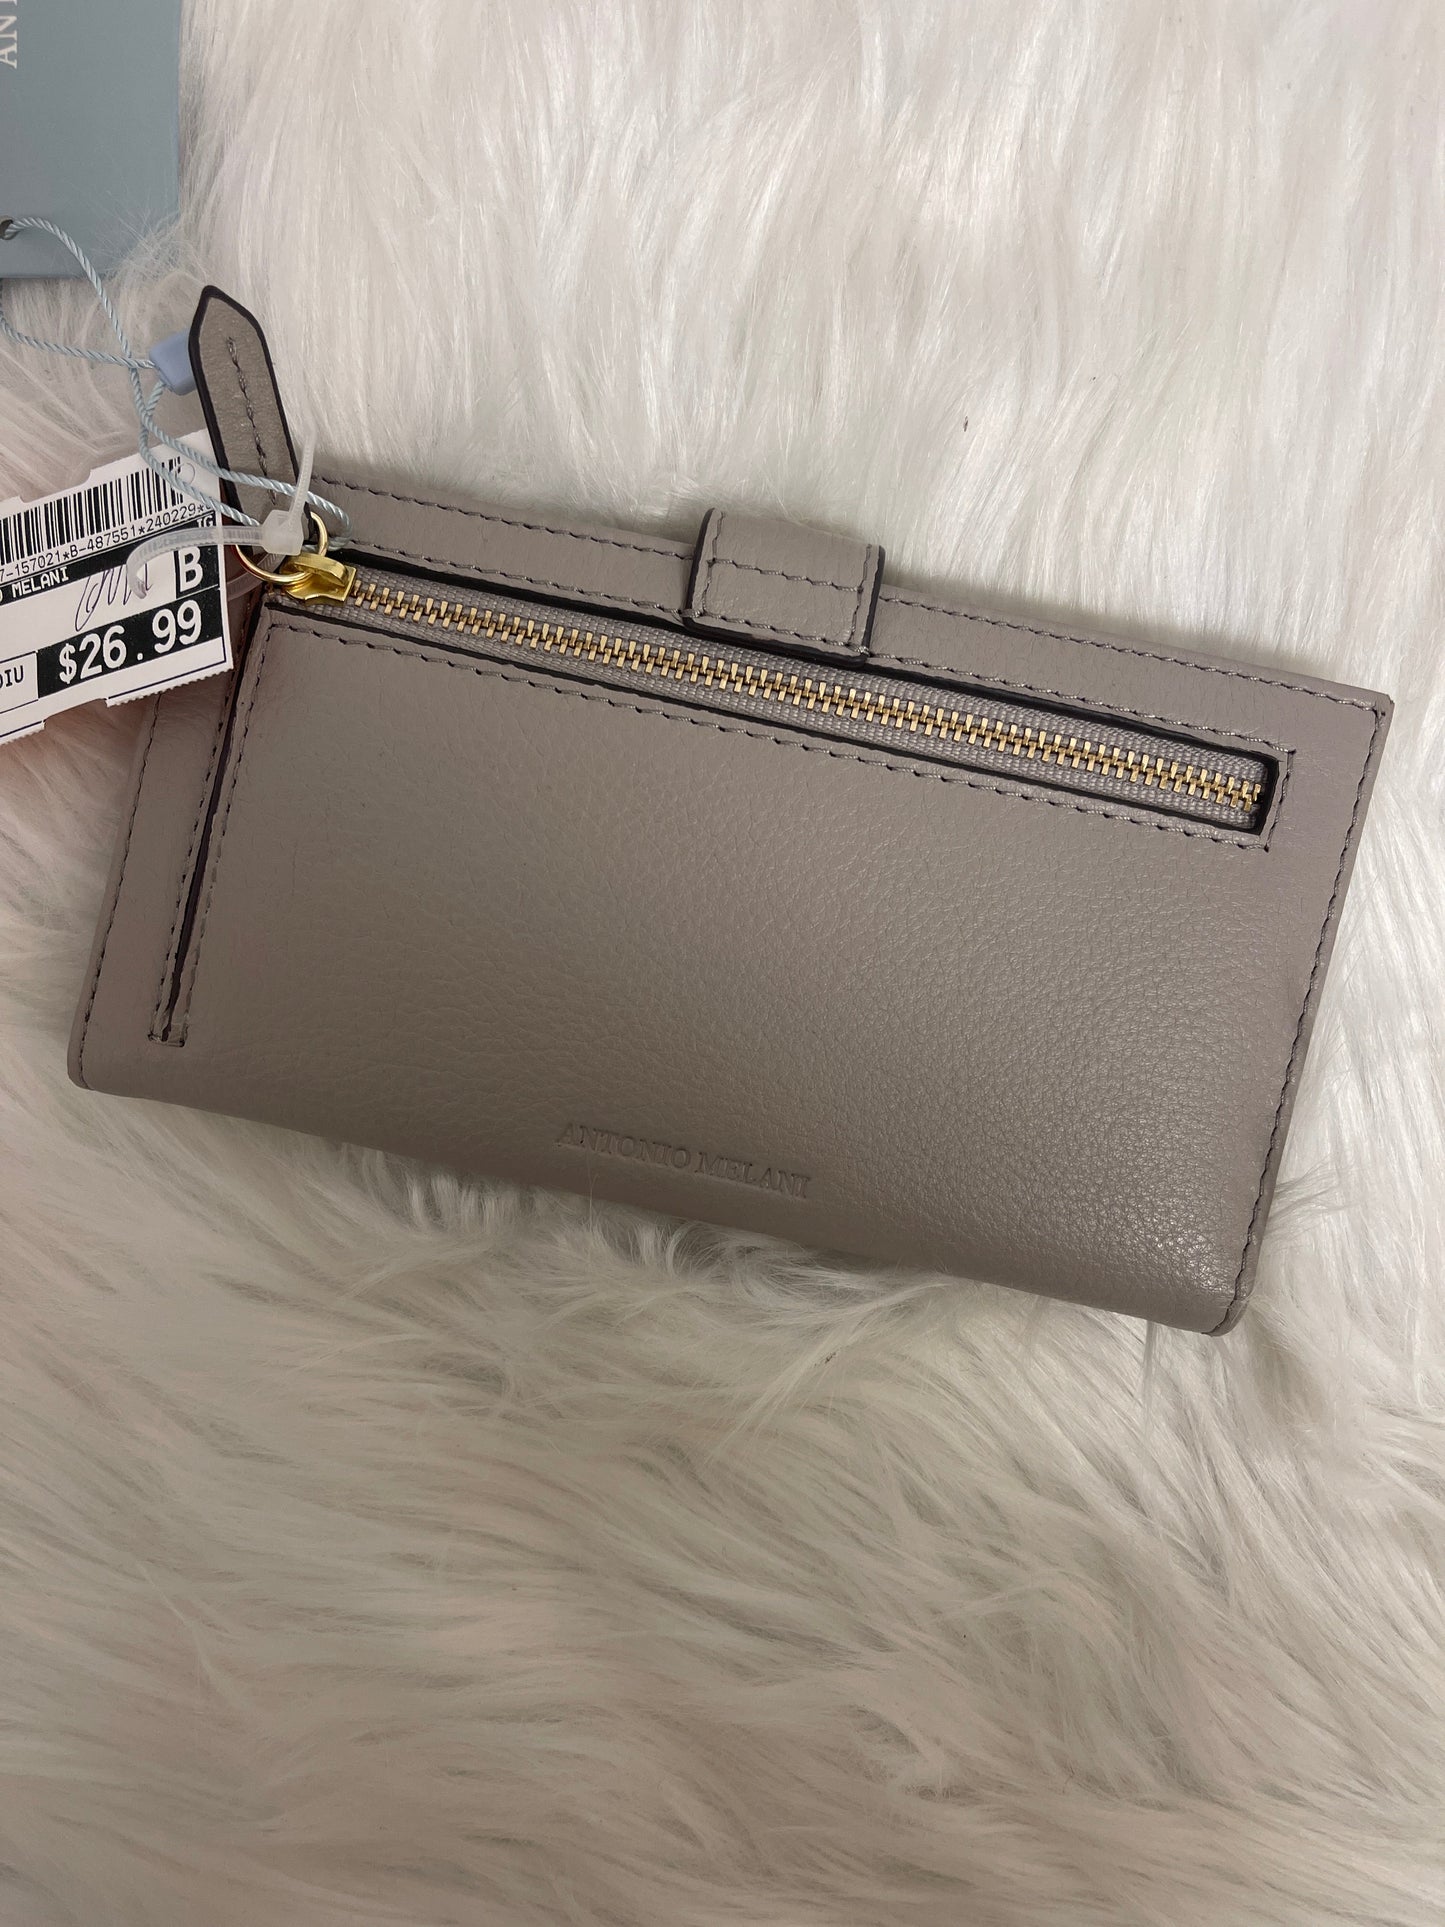 Wallet By Antonio Melani  Size: Medium